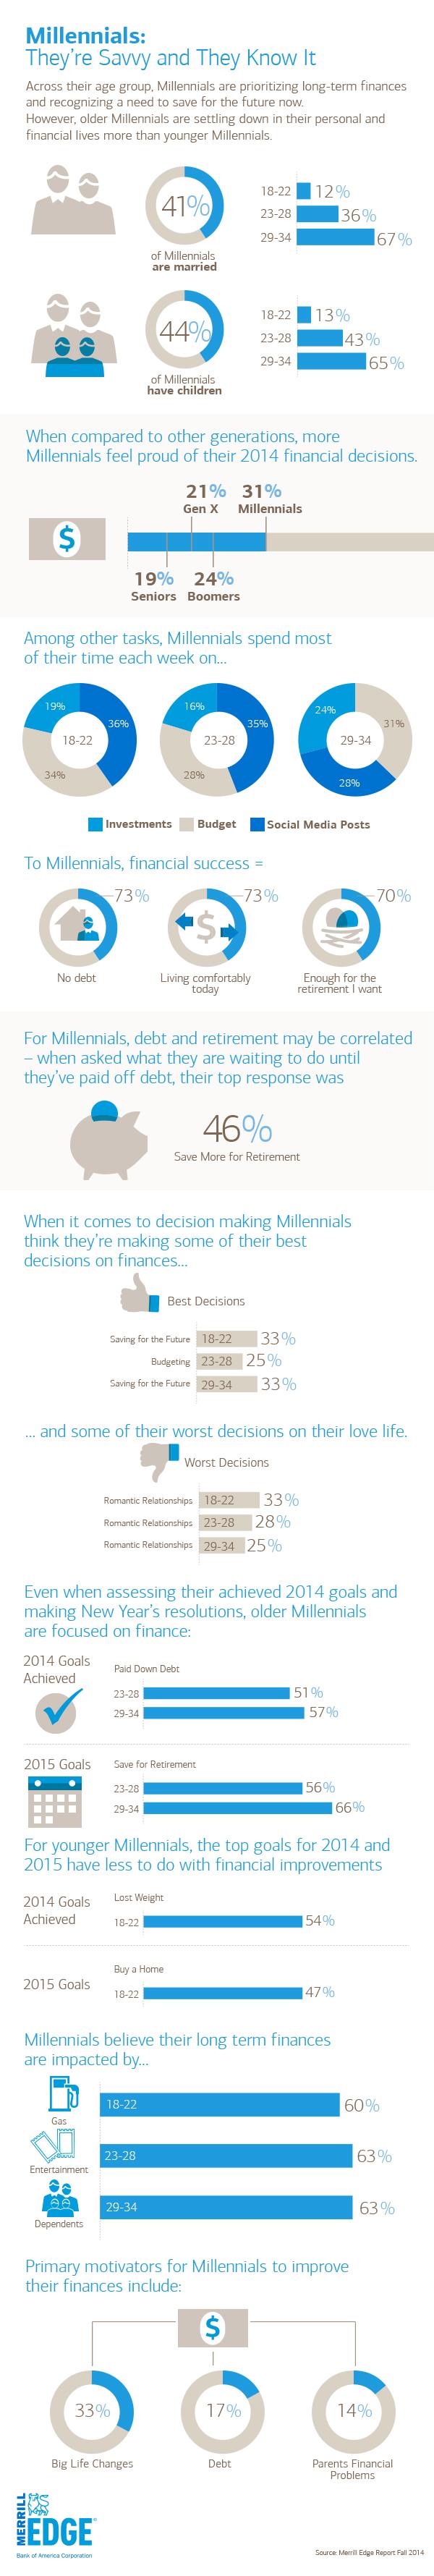 millennials-saving-money